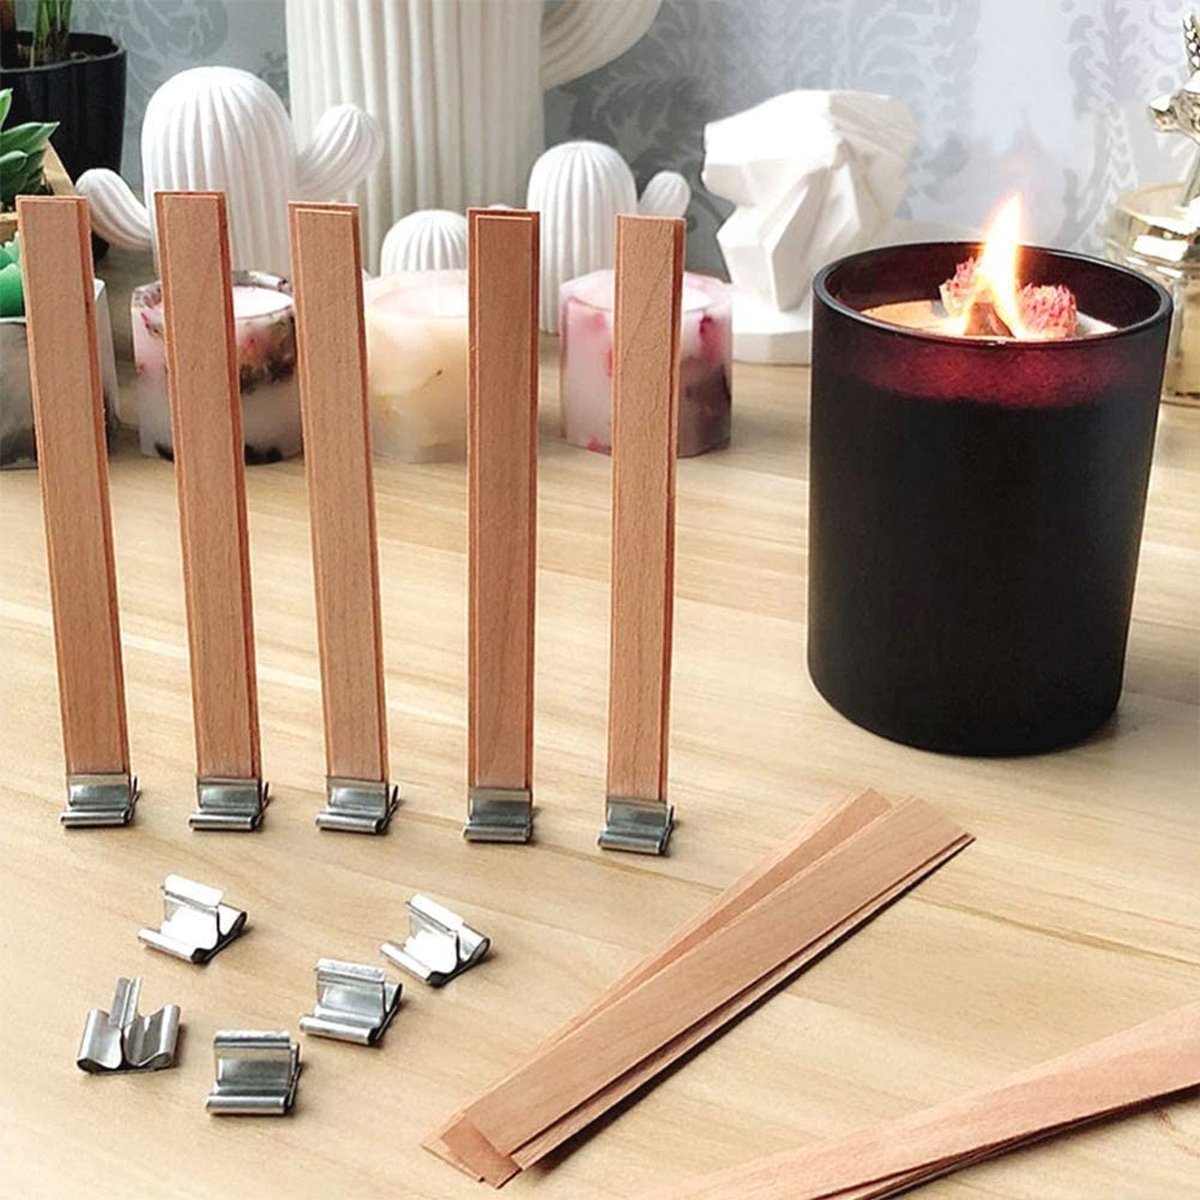 kit de fabrication de bougies naturelles - Les Petits Pigments